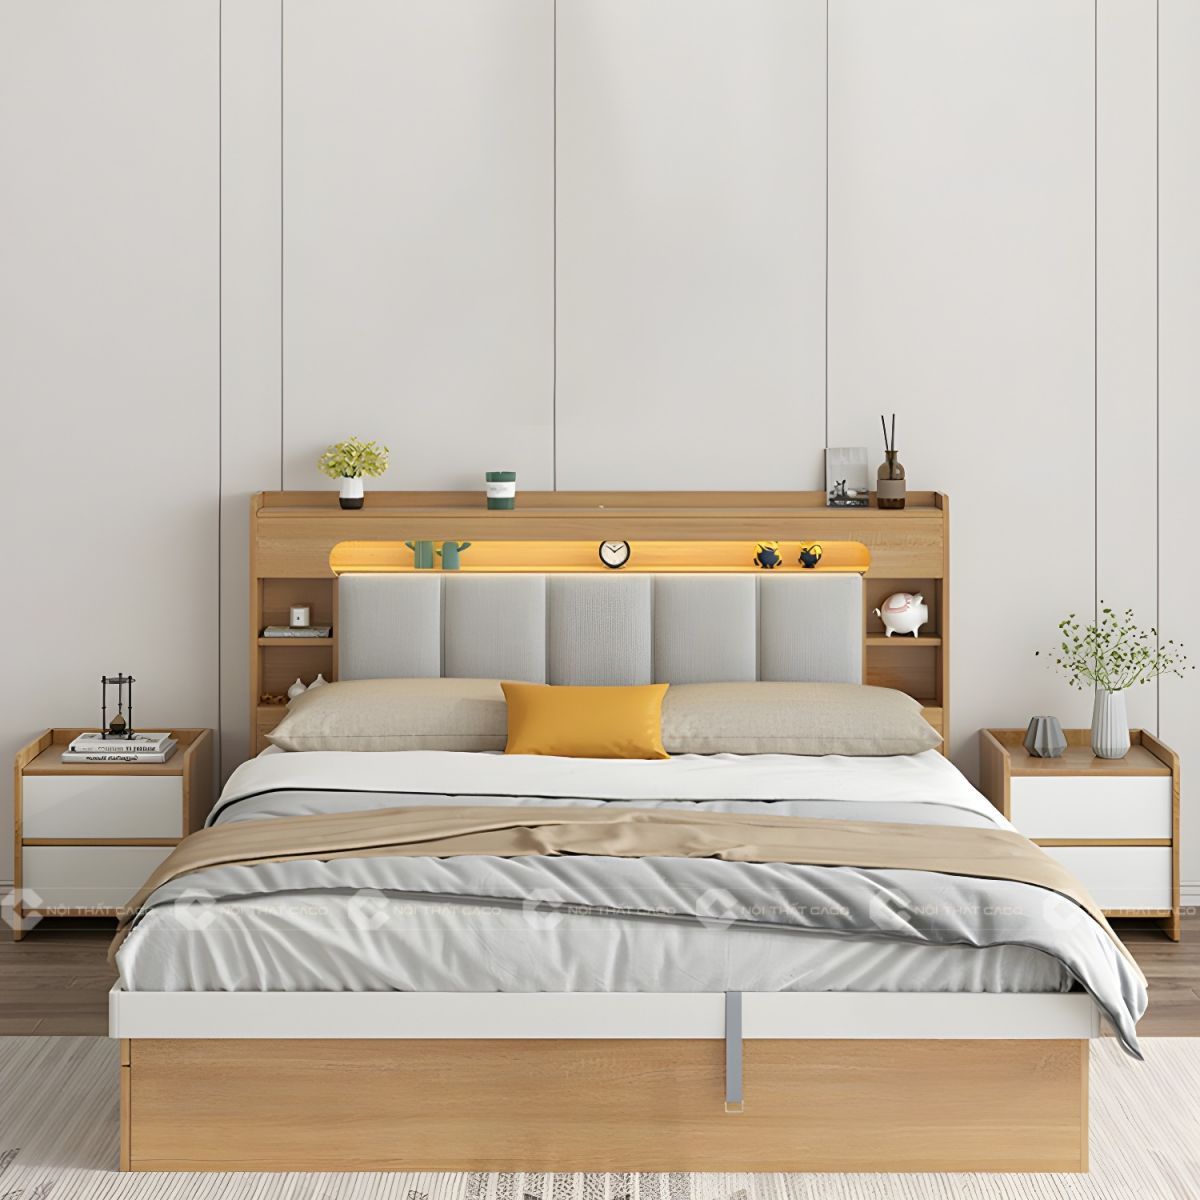 Giường ngủ gỗ công nghiệp với thiết kế tinh tế hiện đại